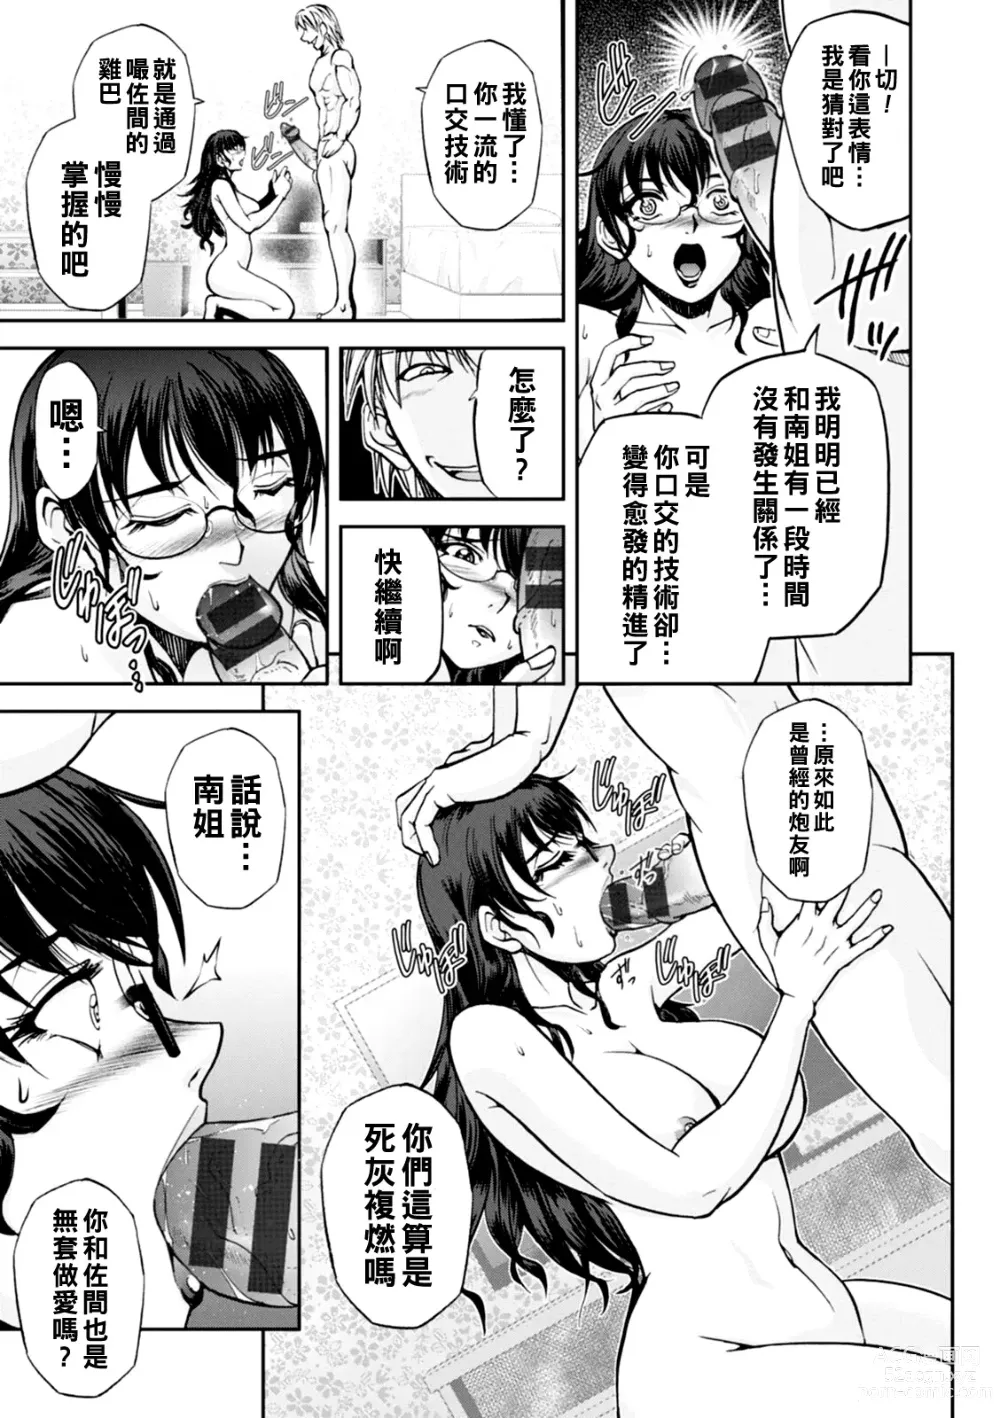 Page 66 of manga Maruhadaka no Minami-san Ch. 1-4